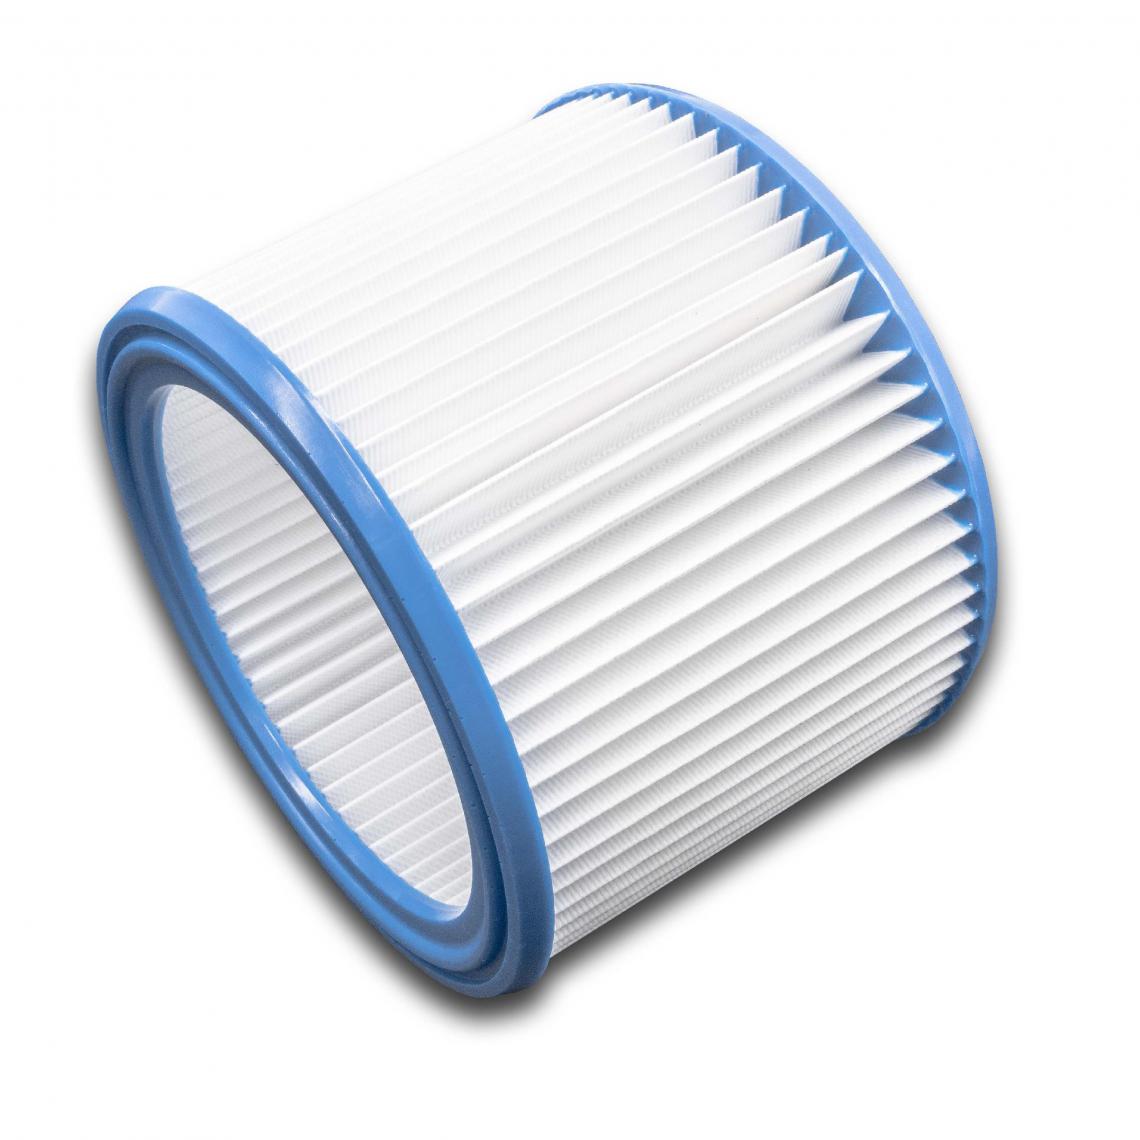 Vhbw - vhbw Set de filtres 5x Filtre plissé compatible avec WAP Attix 360-21 Clean Room, 360-2M, 550-01 aspirateur à sec ou humide - Filtre à cartouche - Accessoire entretien des sols